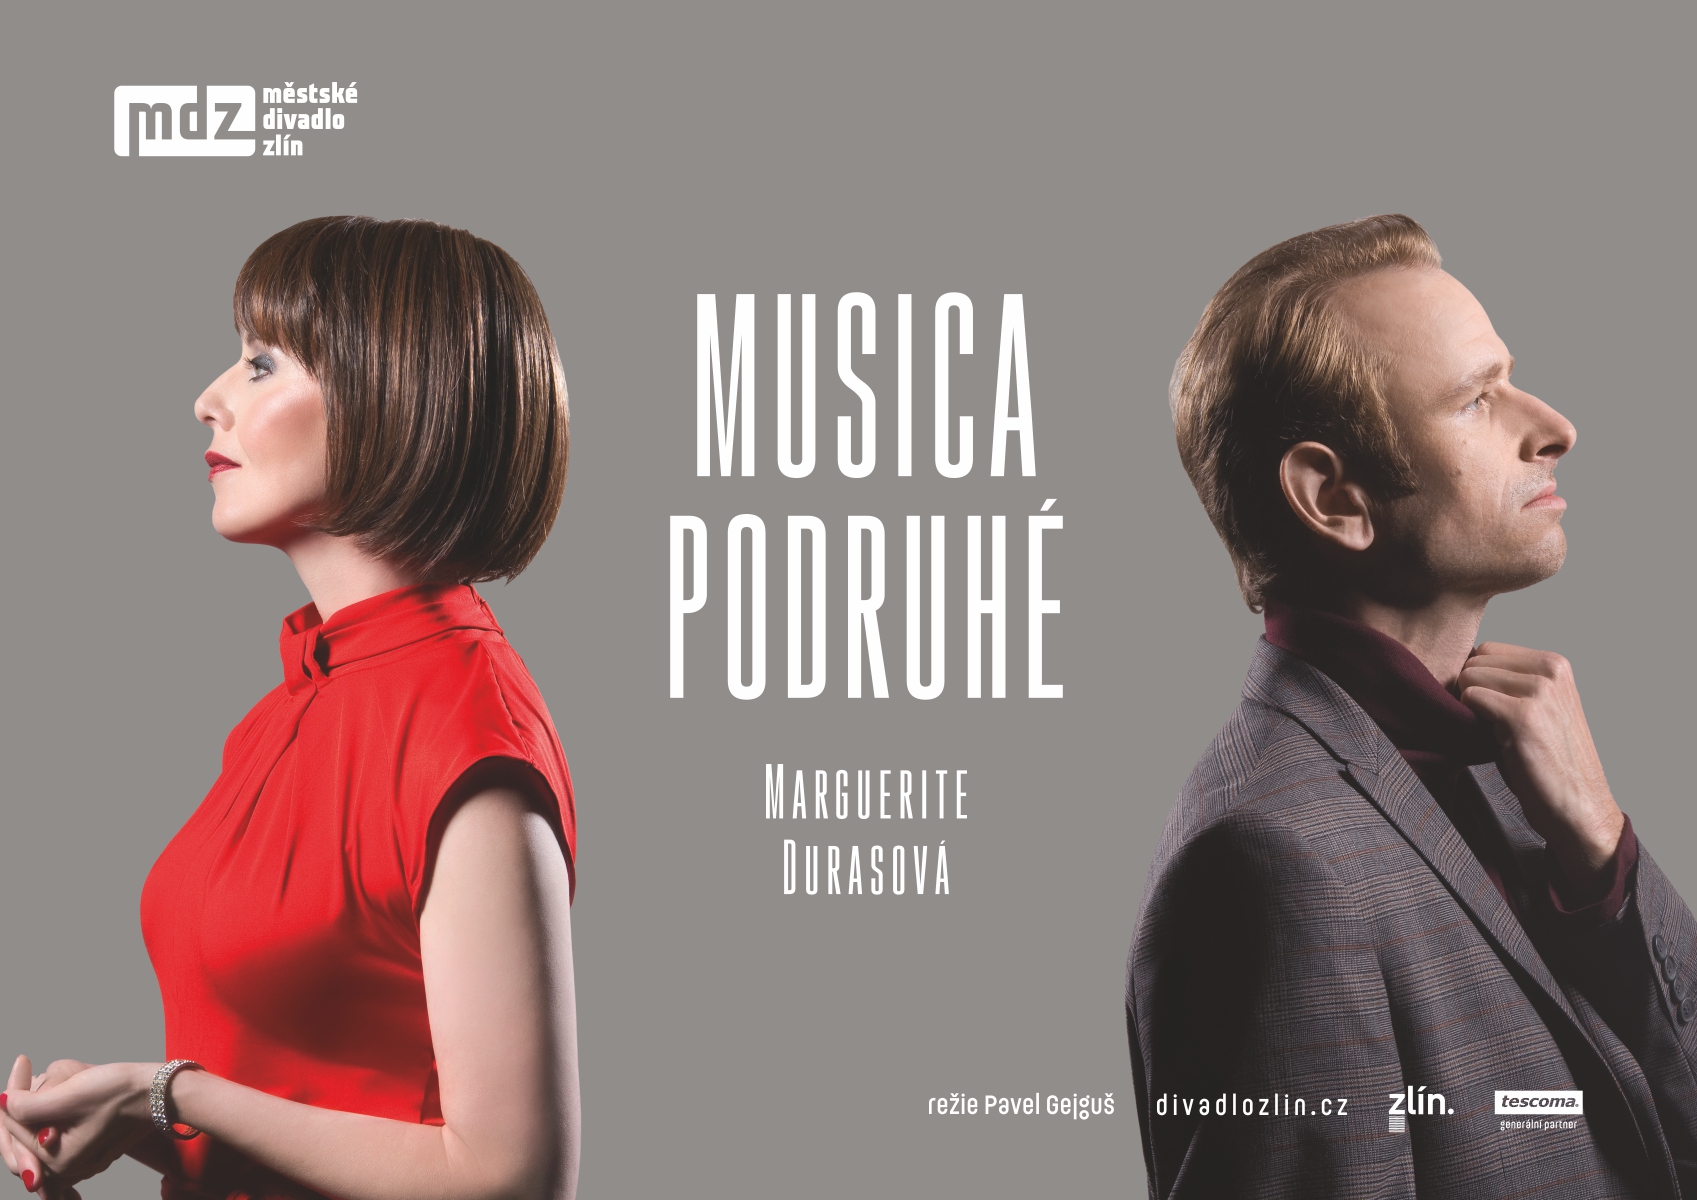 Plakát inscenace Musica podruhé. Městské divadlo Zlín, Studio Z.